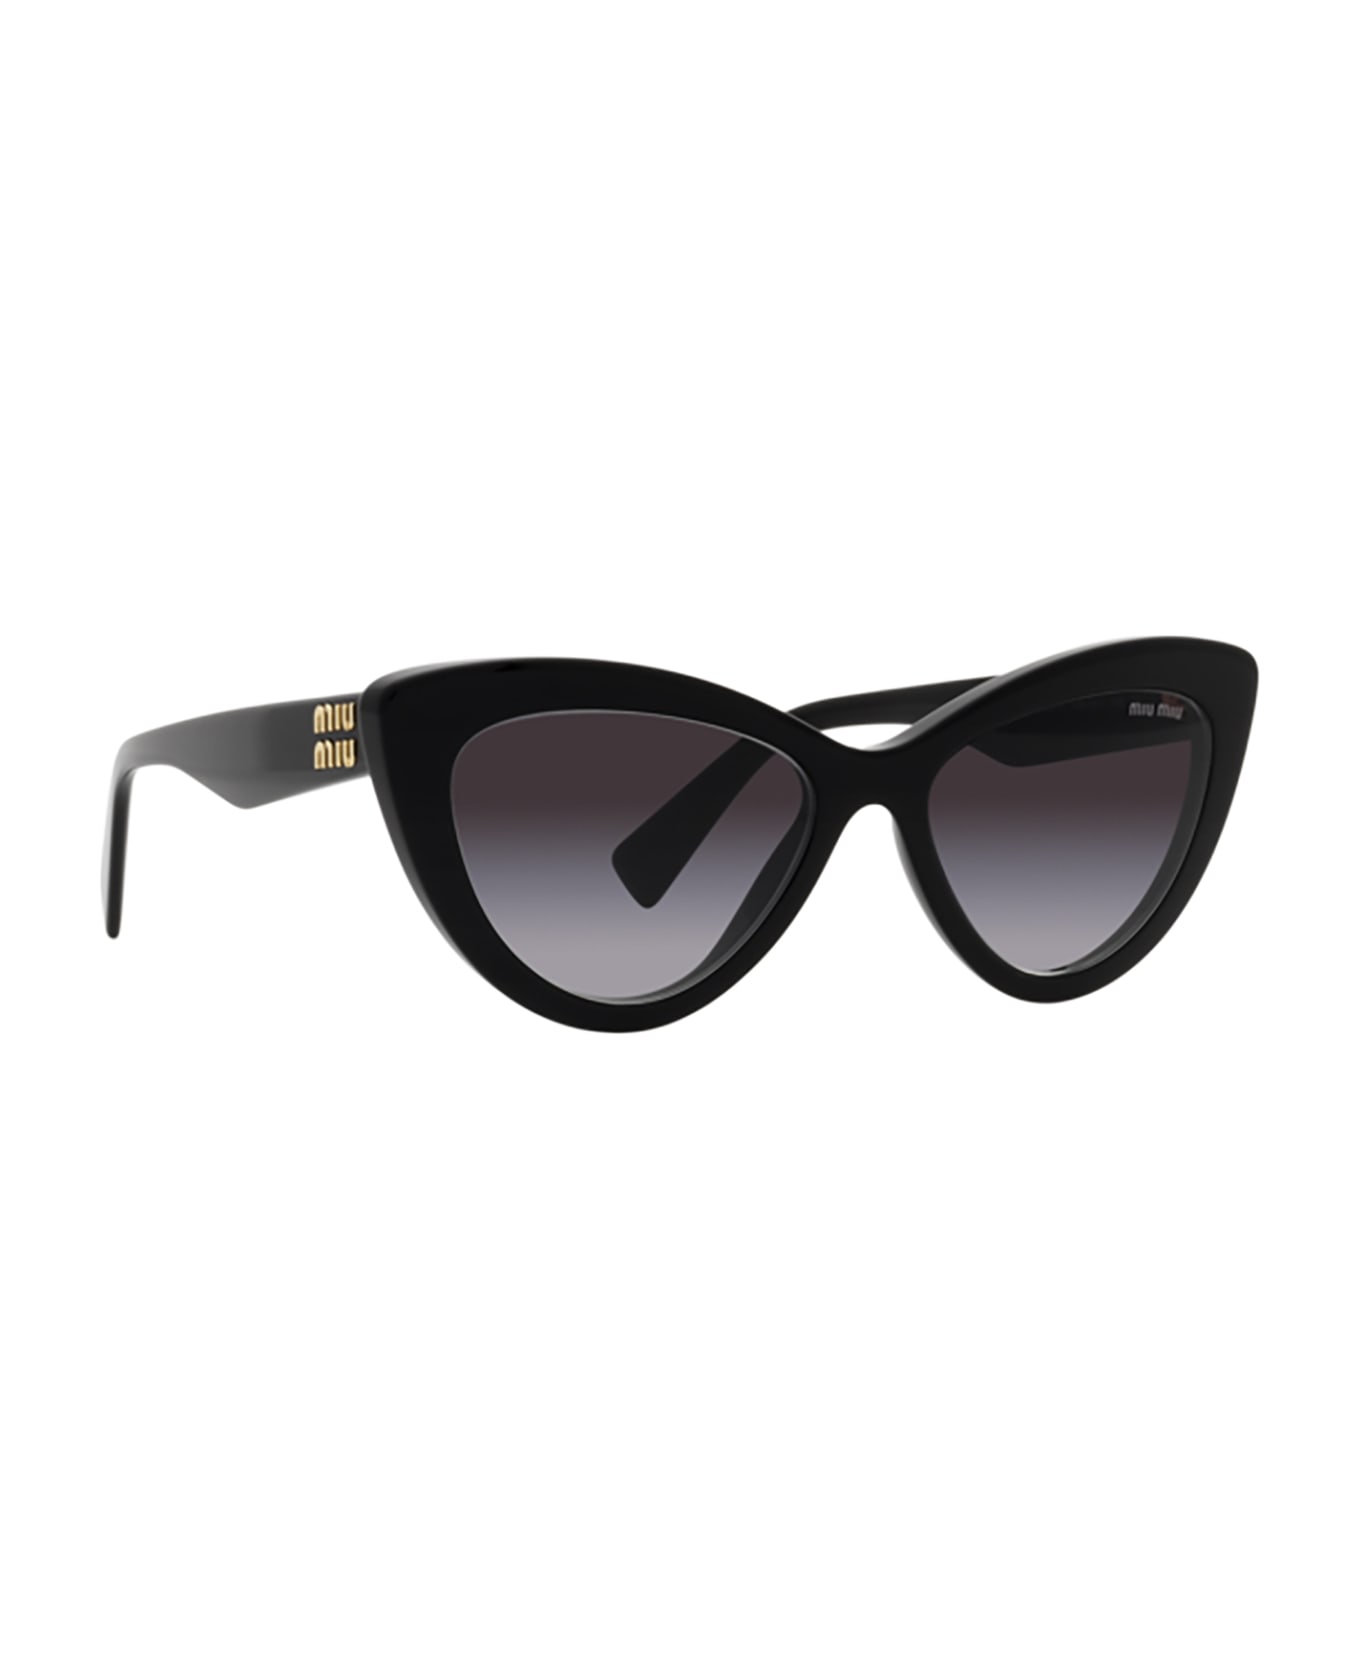 Miu Miu Eyewear Mu 04ys Black Sunglasses - Black